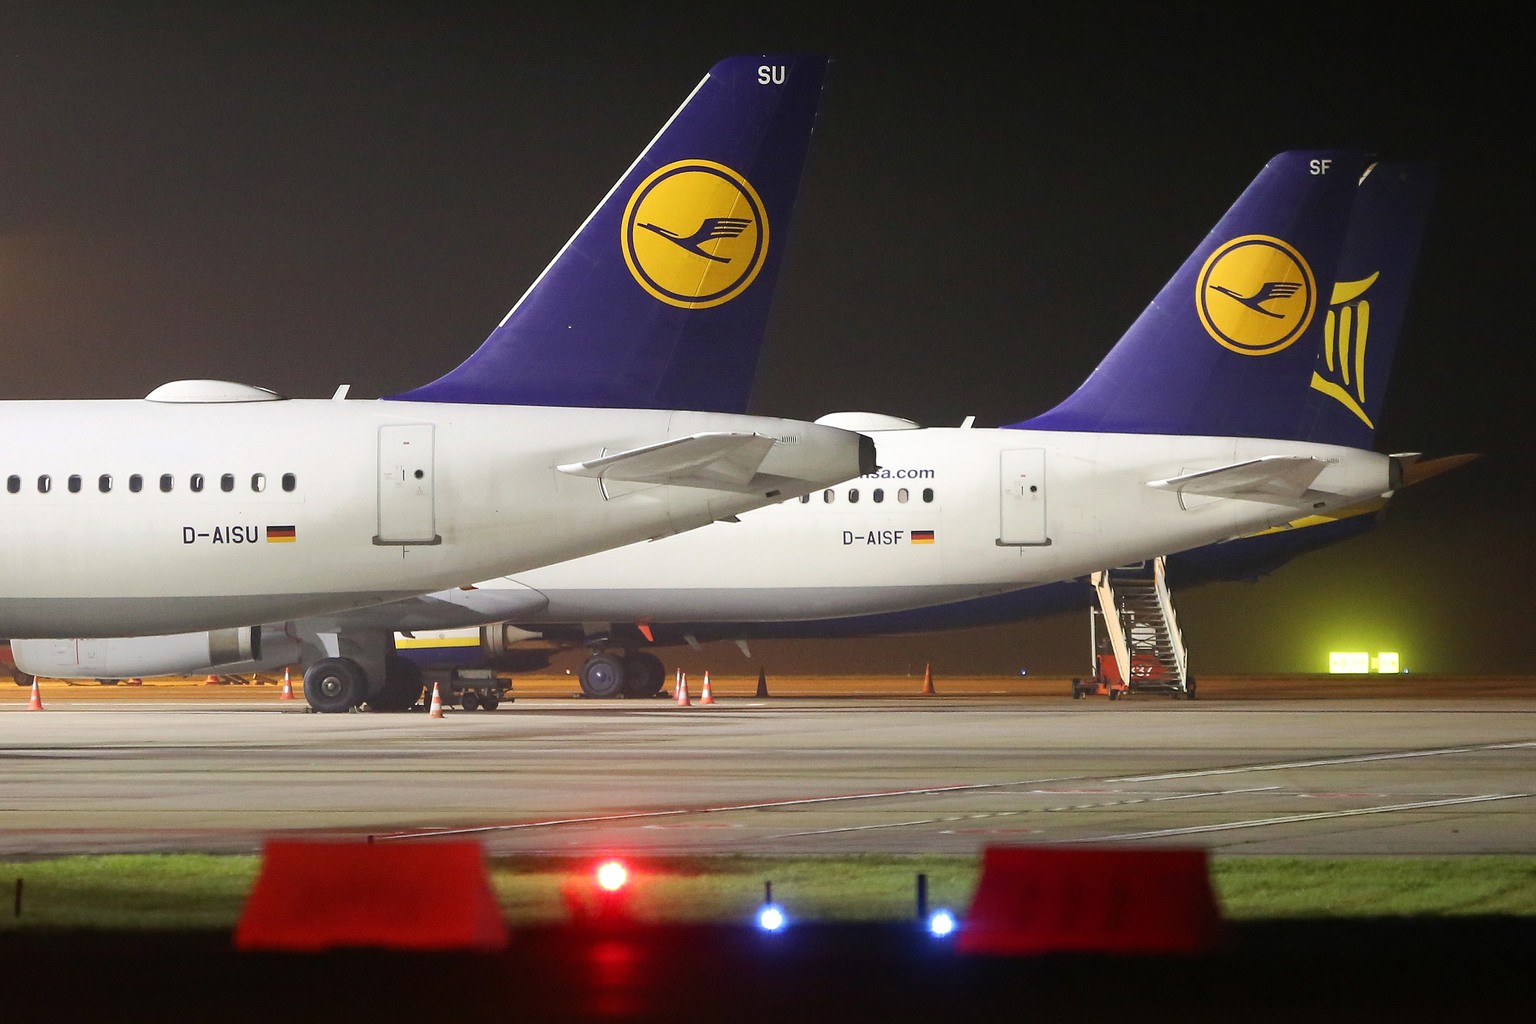 07.11.2019, Hamburg: Zwei Lufthansa-Luftmaschinen (Im Vordergrund) stehen geparkt am Flughafen Hamburg. Bei der Lufthansa hat um Mitternacht ein 48-Stunden-Streik der Flugbegleiter begonnen. Foto: Bod ...